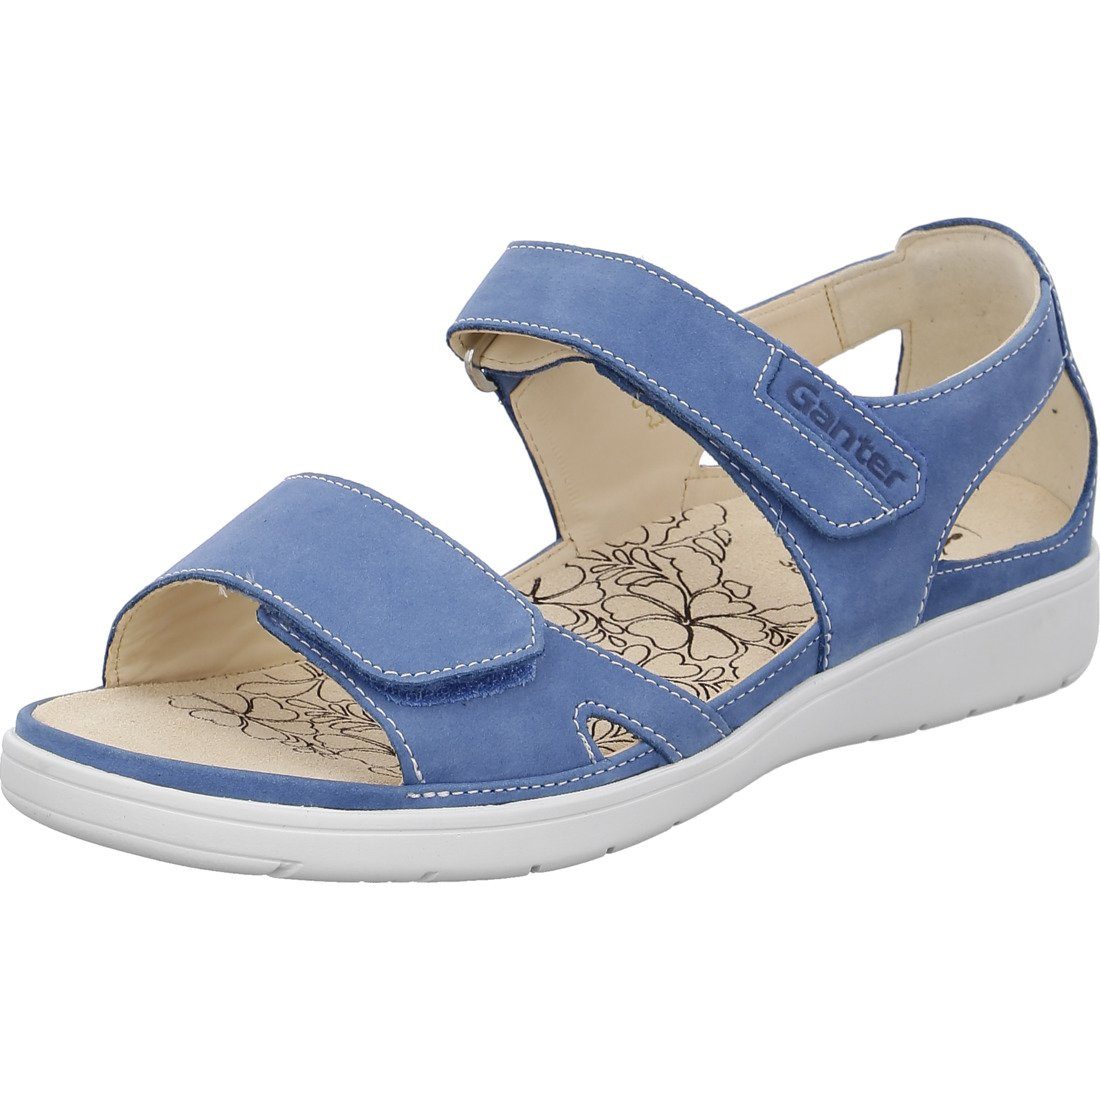 Ganter Ganter Schuhe, Sandalette blau Damen Sandalette 048805 - Leder Gina